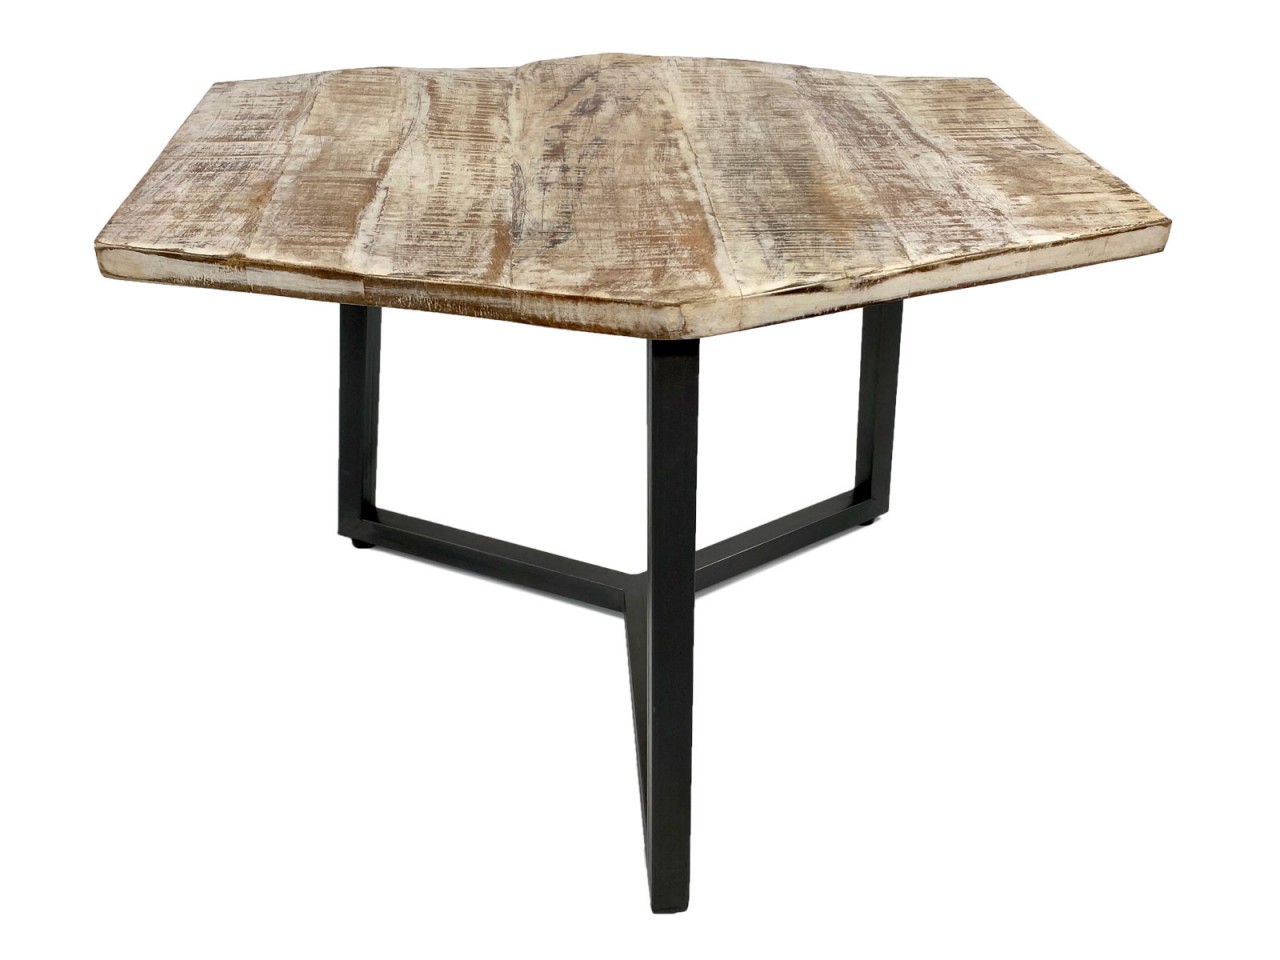 Beistelltisch 56 x 47 cm nachhaltig Wohnzimmer Tisch Couchtisch Nizza Metall-Gestell schwarz - weiß